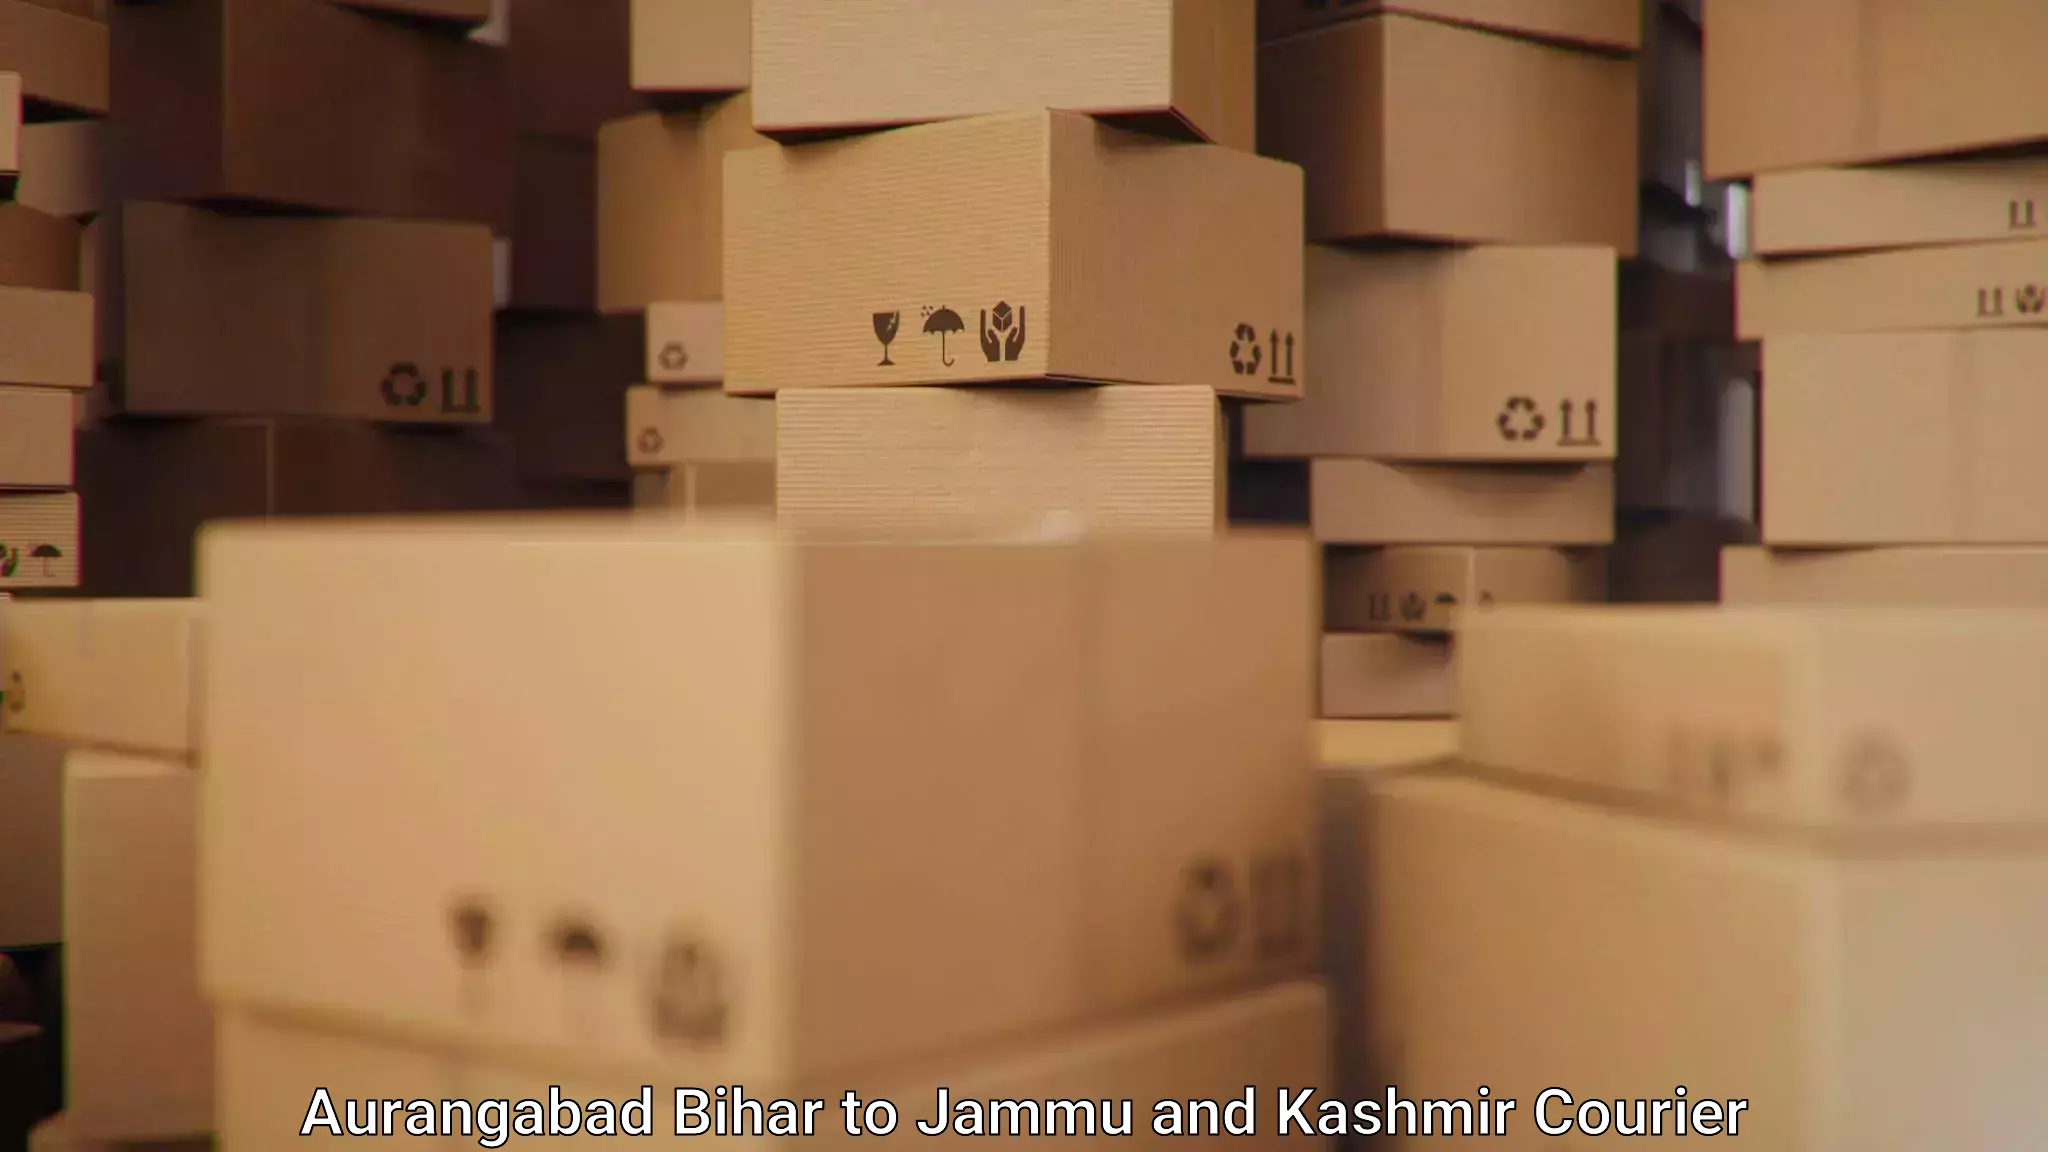 Flexible delivery schedules Aurangabad Bihar to University of Jammu